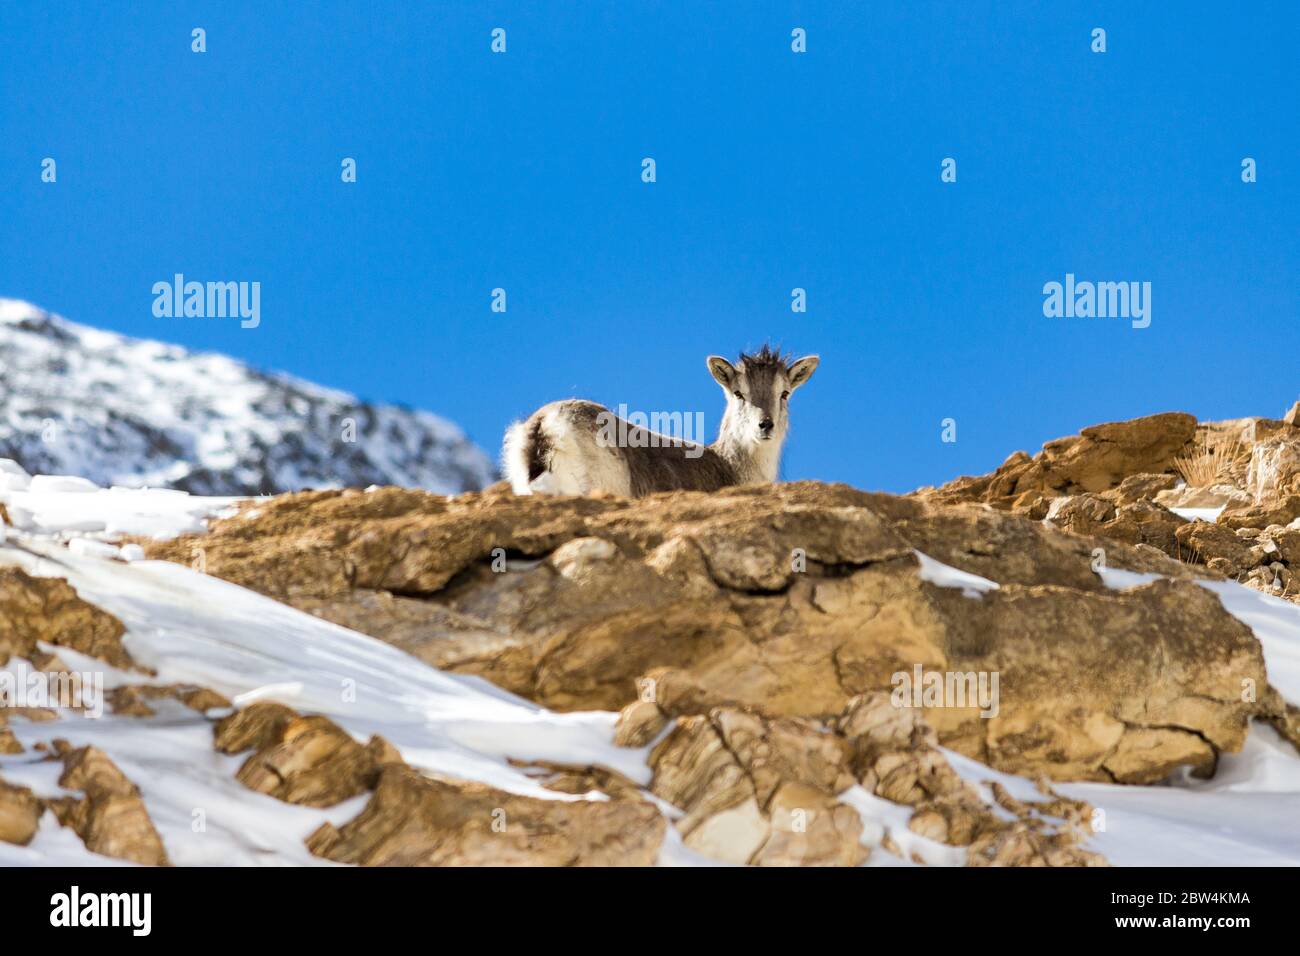 Die bharal oder Himalaya blauen Schafe oder naur (Pseudois nayaur) ist ein caprid in den hohen Himalaya von Ladakh, Indien gefunden. Schneeberge von Ladakh, Indien. Stockfoto